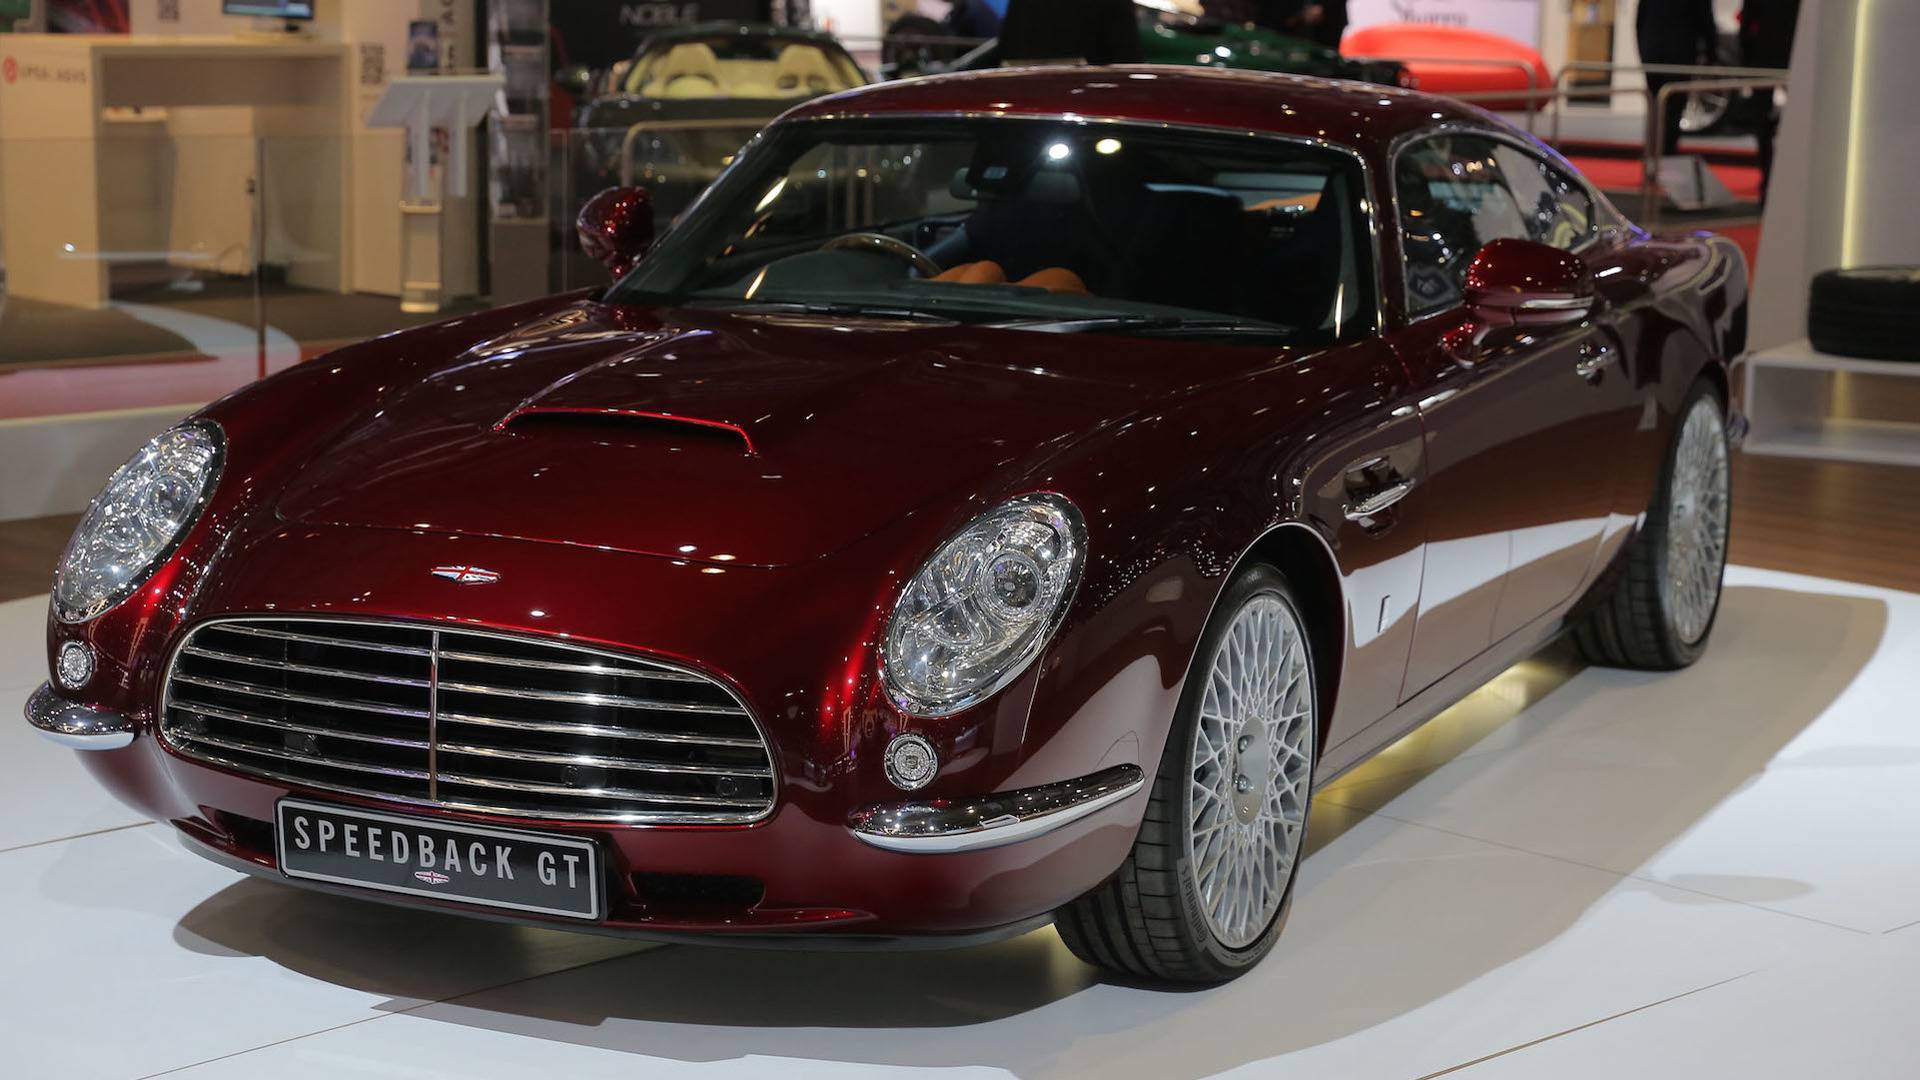 Maserati заявил про разработку первой в своей истории электрической установки